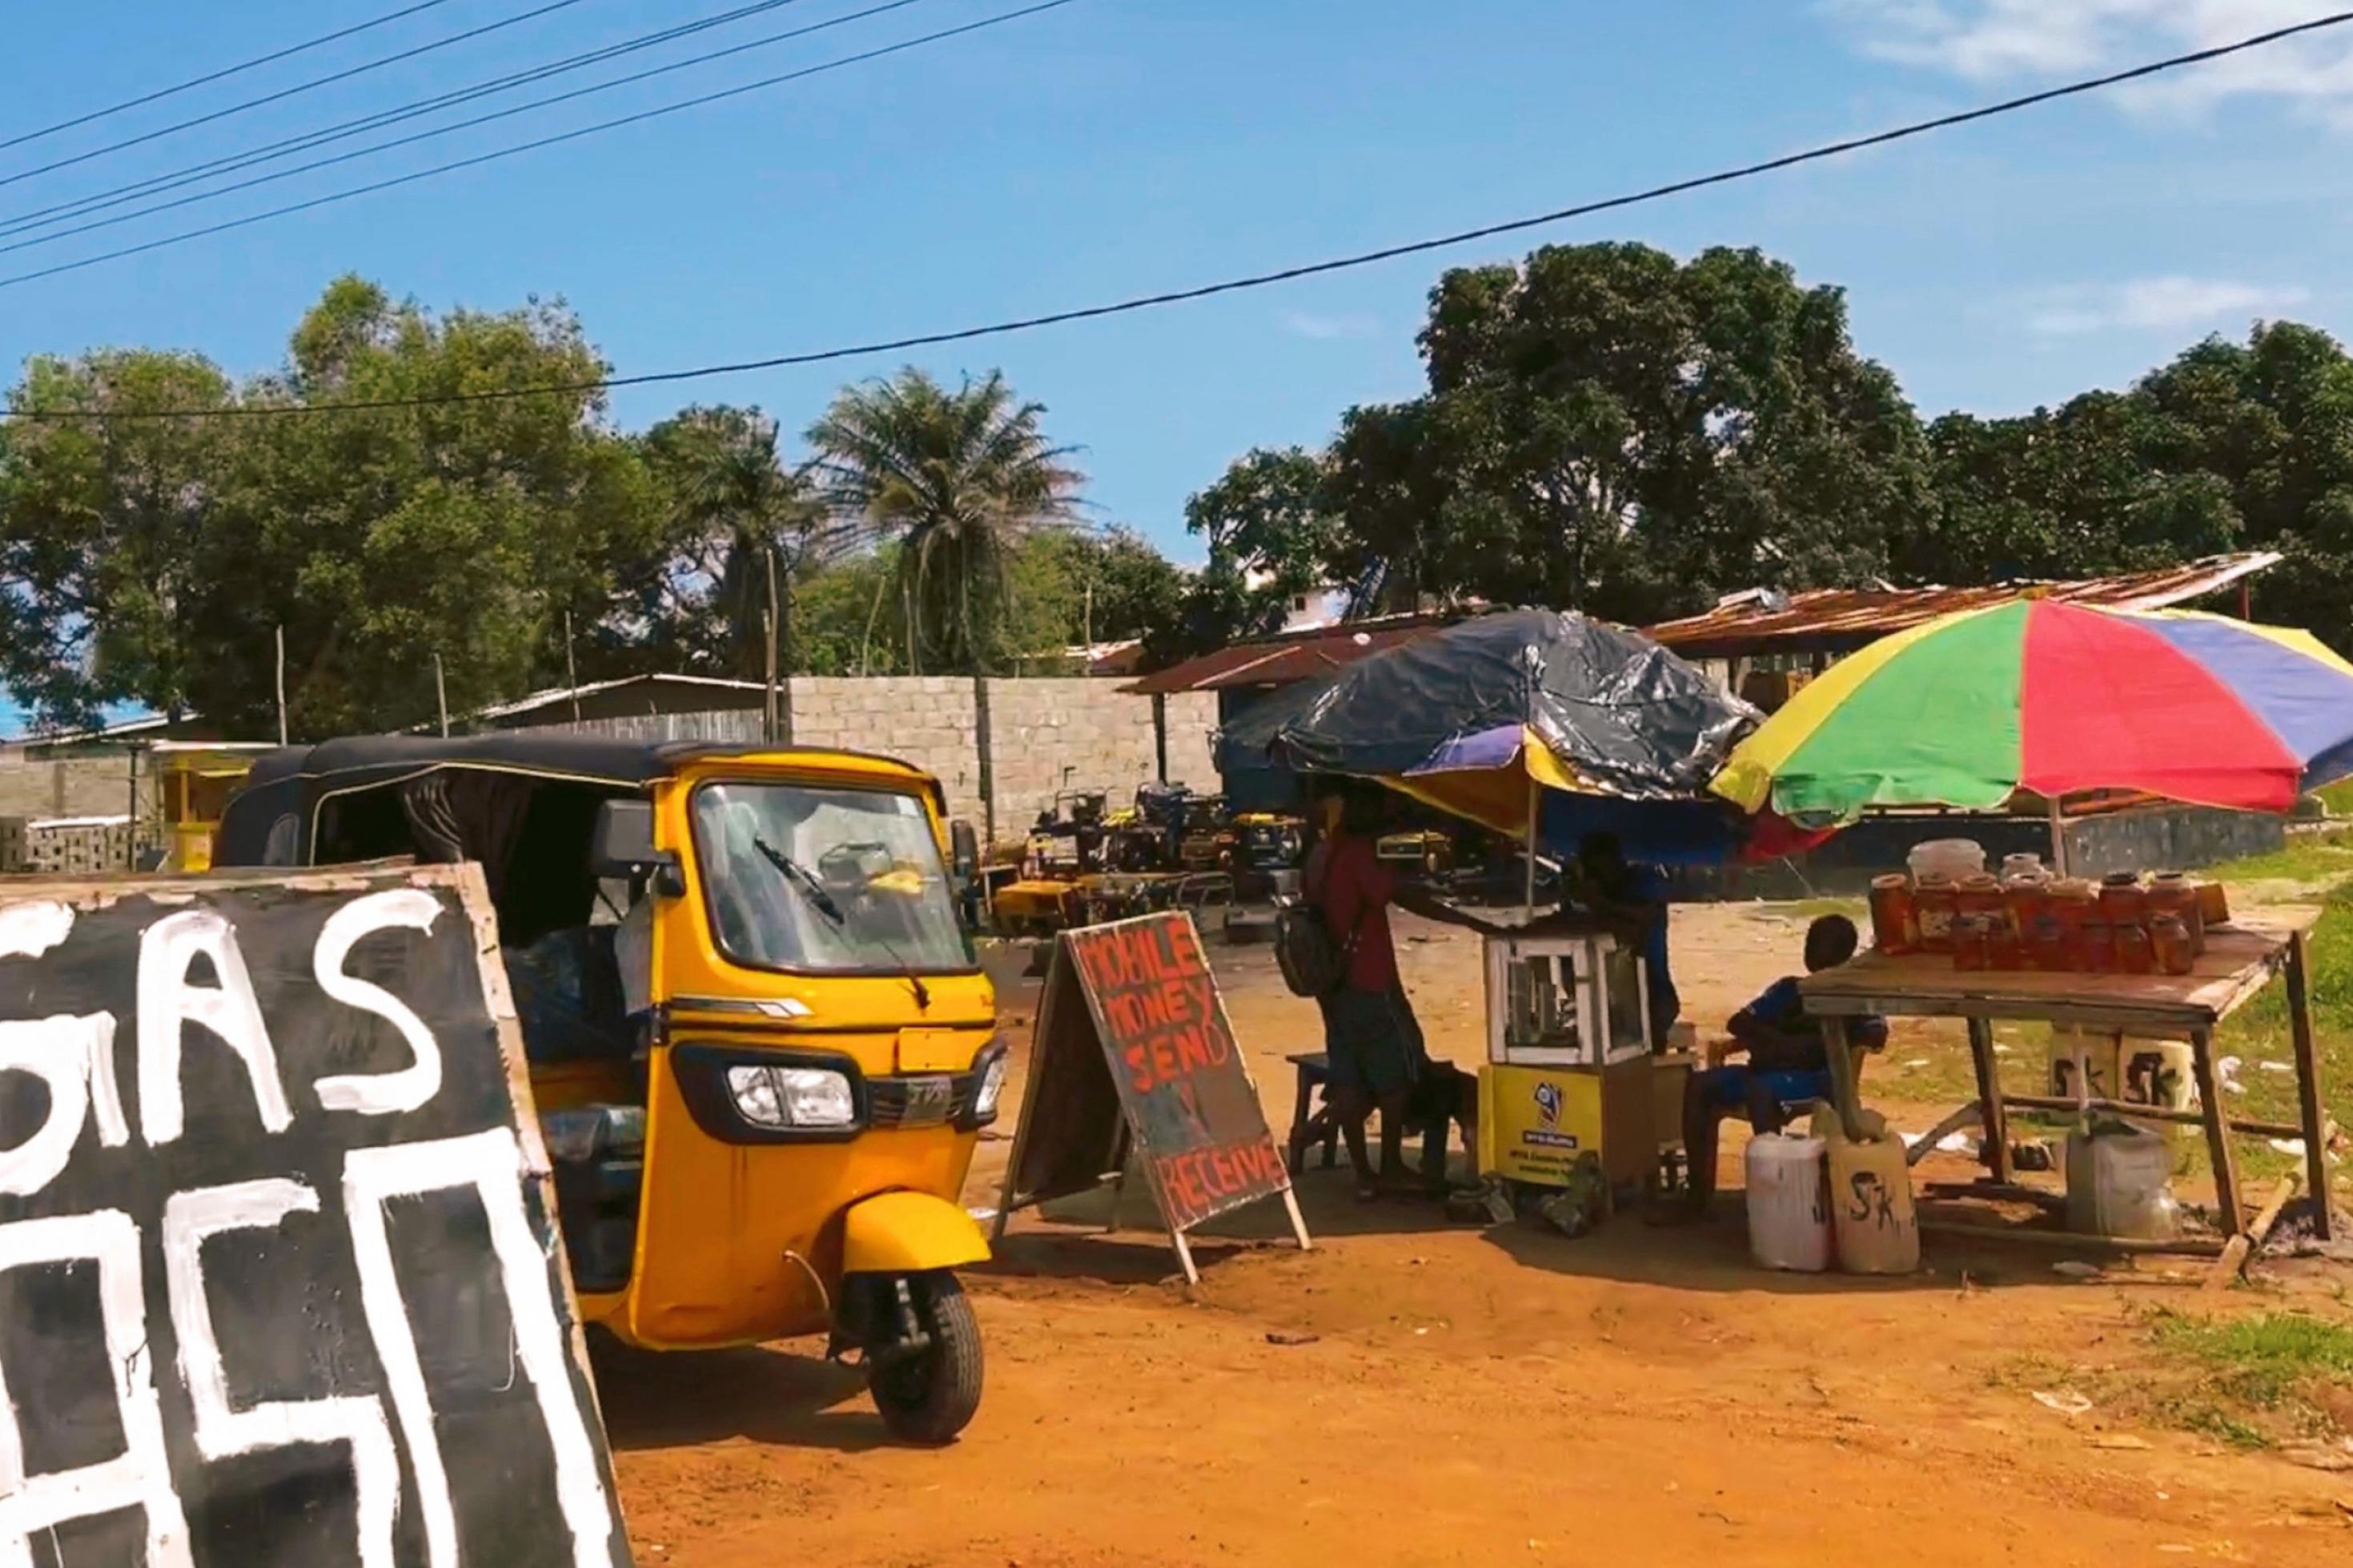 Ein mobiler Geldtransferdienst am Straßenrand in Liberia, Westafrika, für Menschen ohne Zugang zu Banken